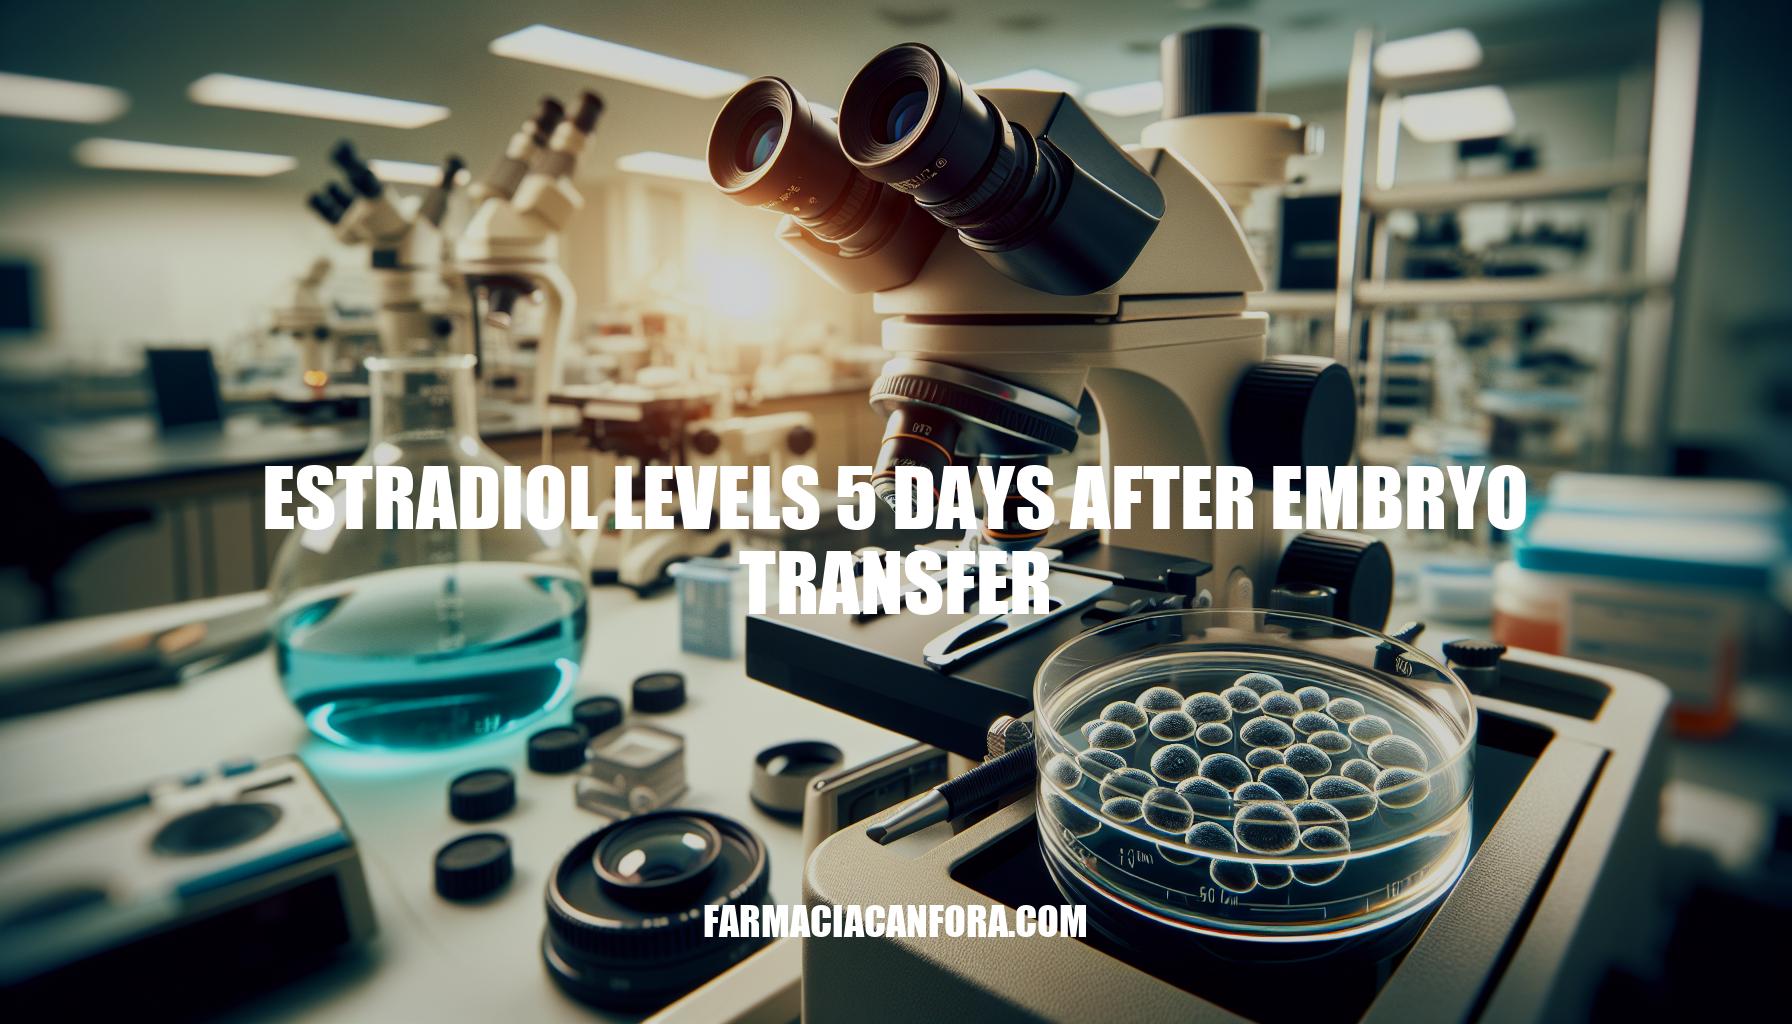 Understanding Estradiol Levels 5 Days After Embryo Transfer